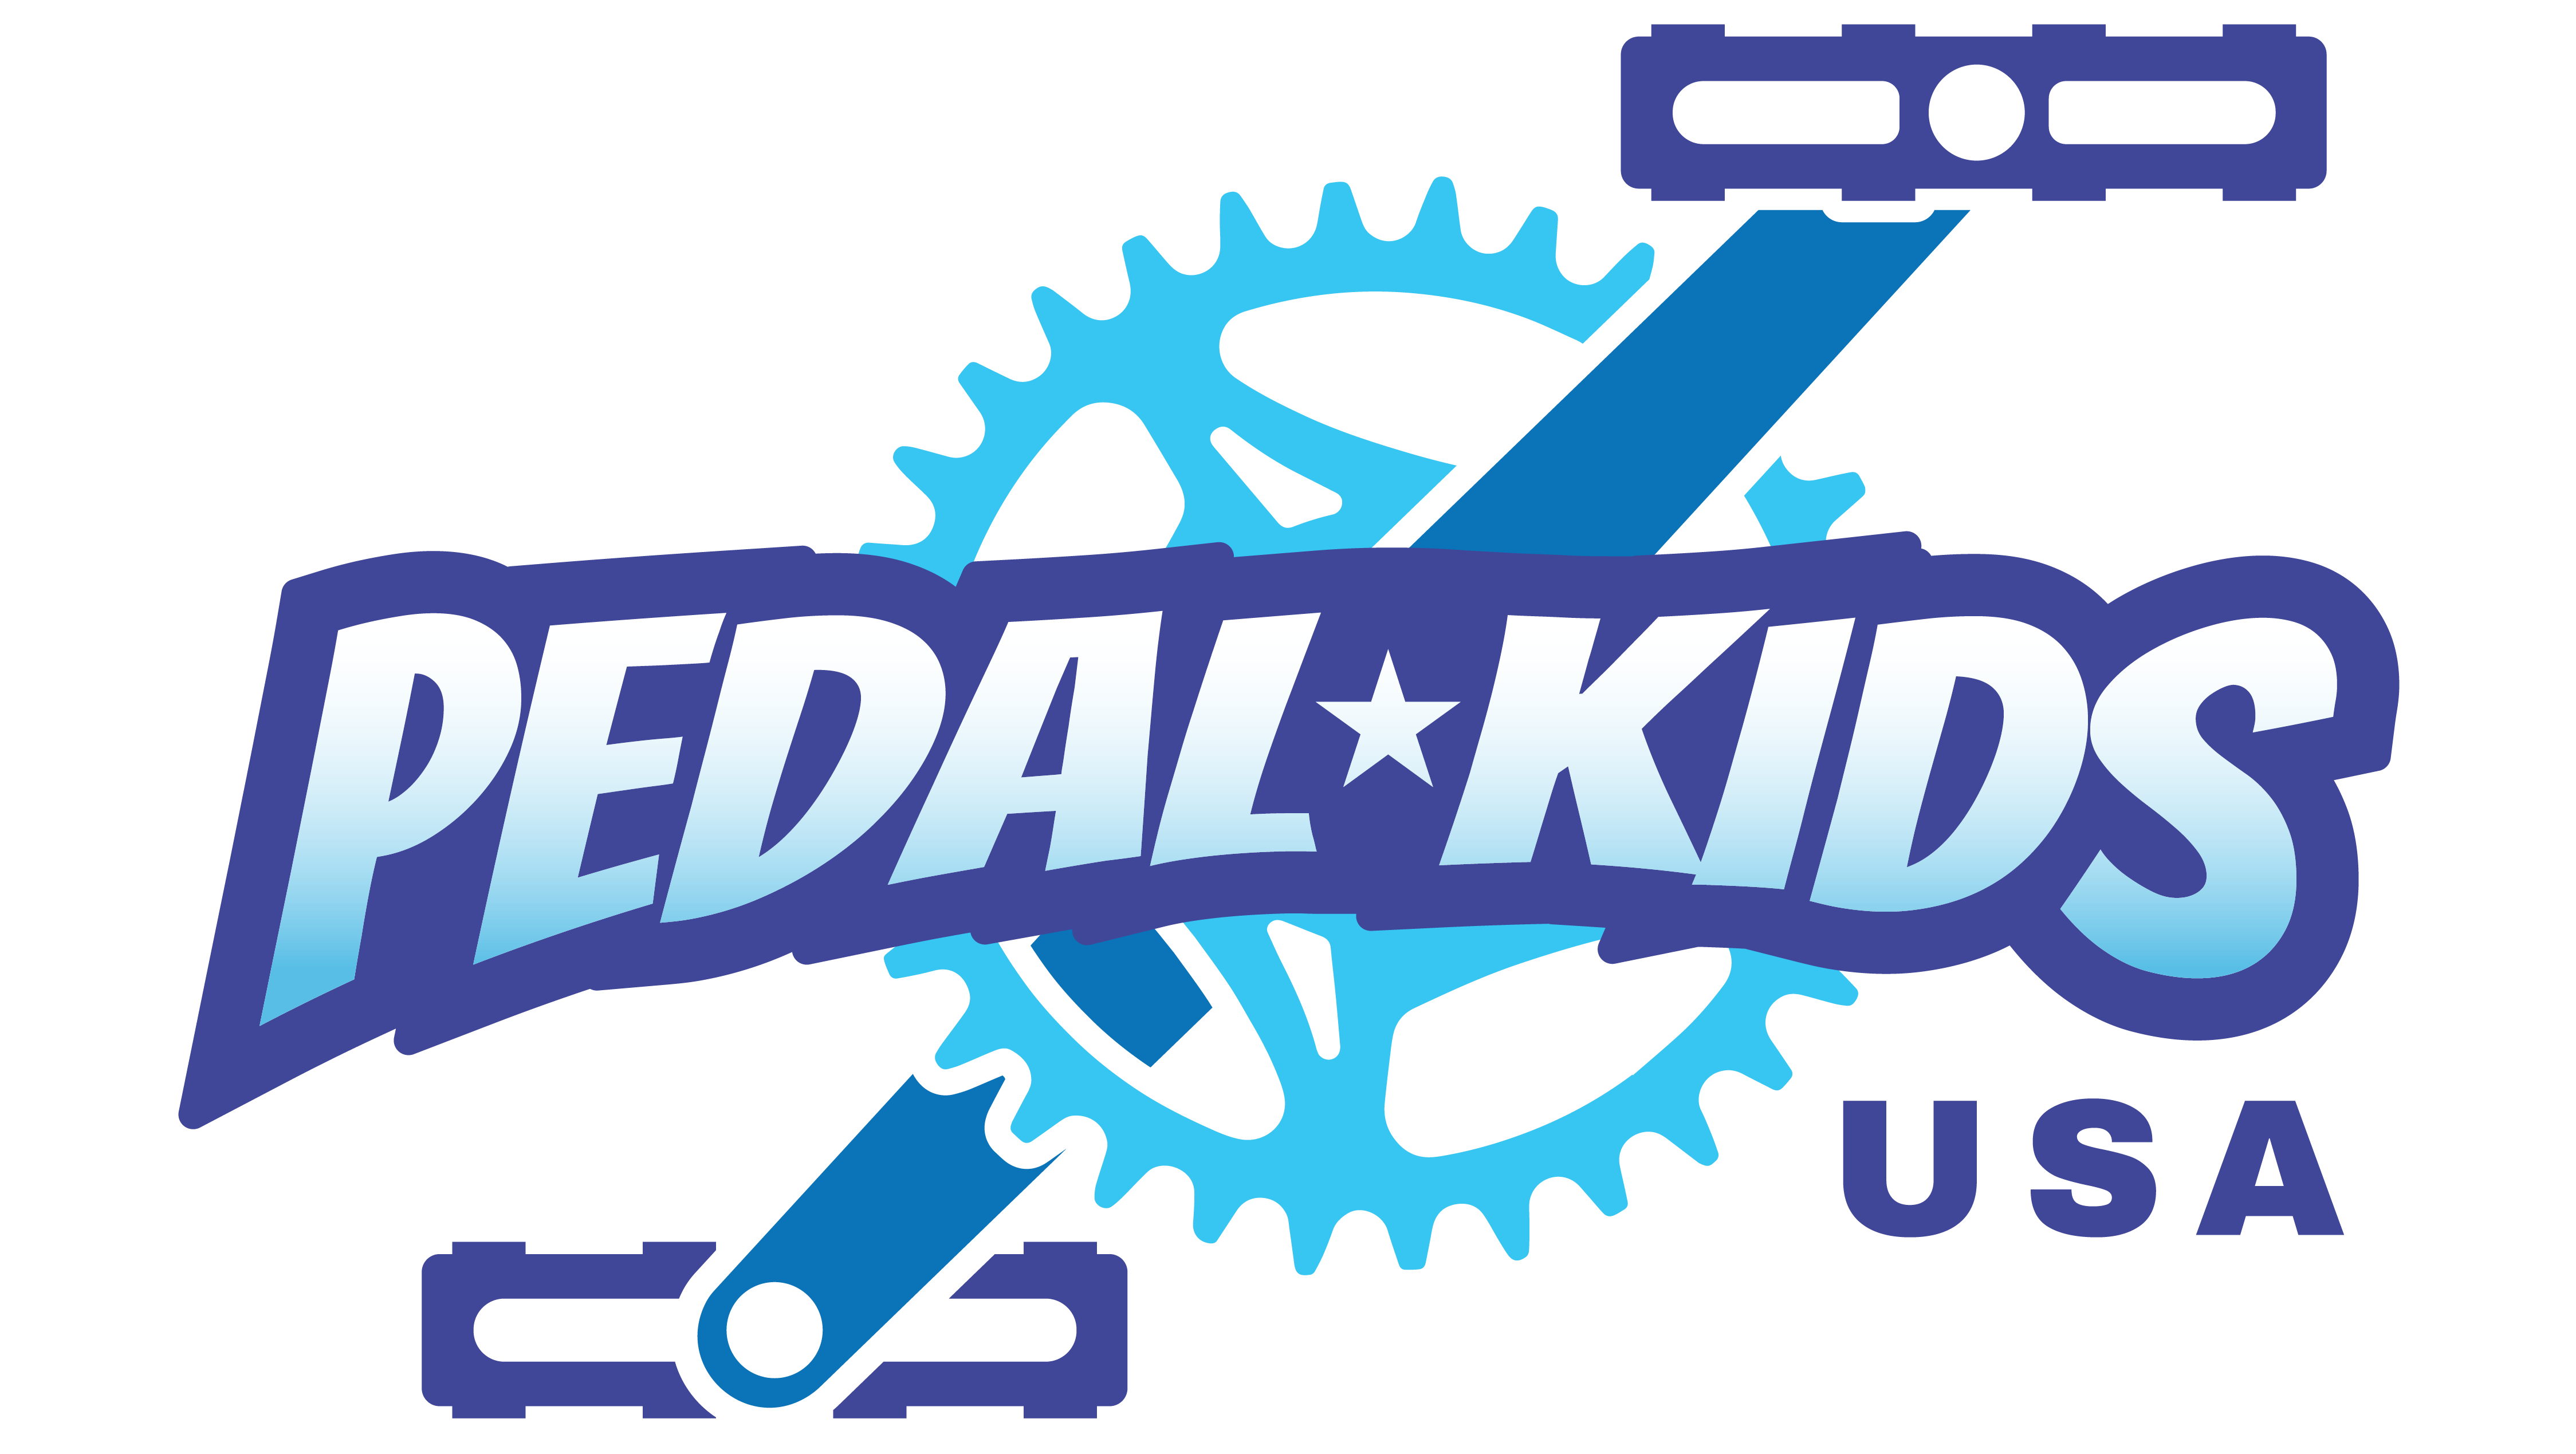 Pedal Kids USA Logo